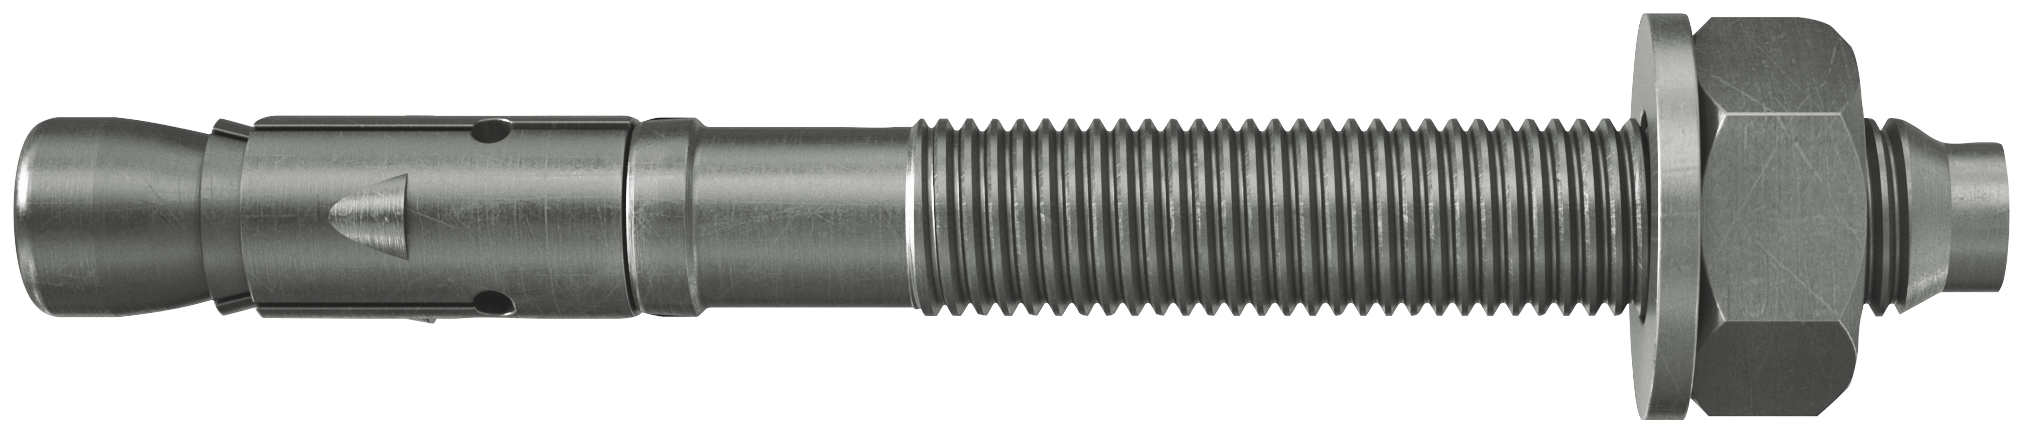 fischer Tassello acciaio FAZ II 16/25 A4 (20 Pz.) L'ancorante ad espansione ad alte prestazioni per carichi statici su calcestruzzo fessurato e per applicazioni sismiche. Versione in acciaio inossidabile con classe di resistenza alla corrosione CRC III..